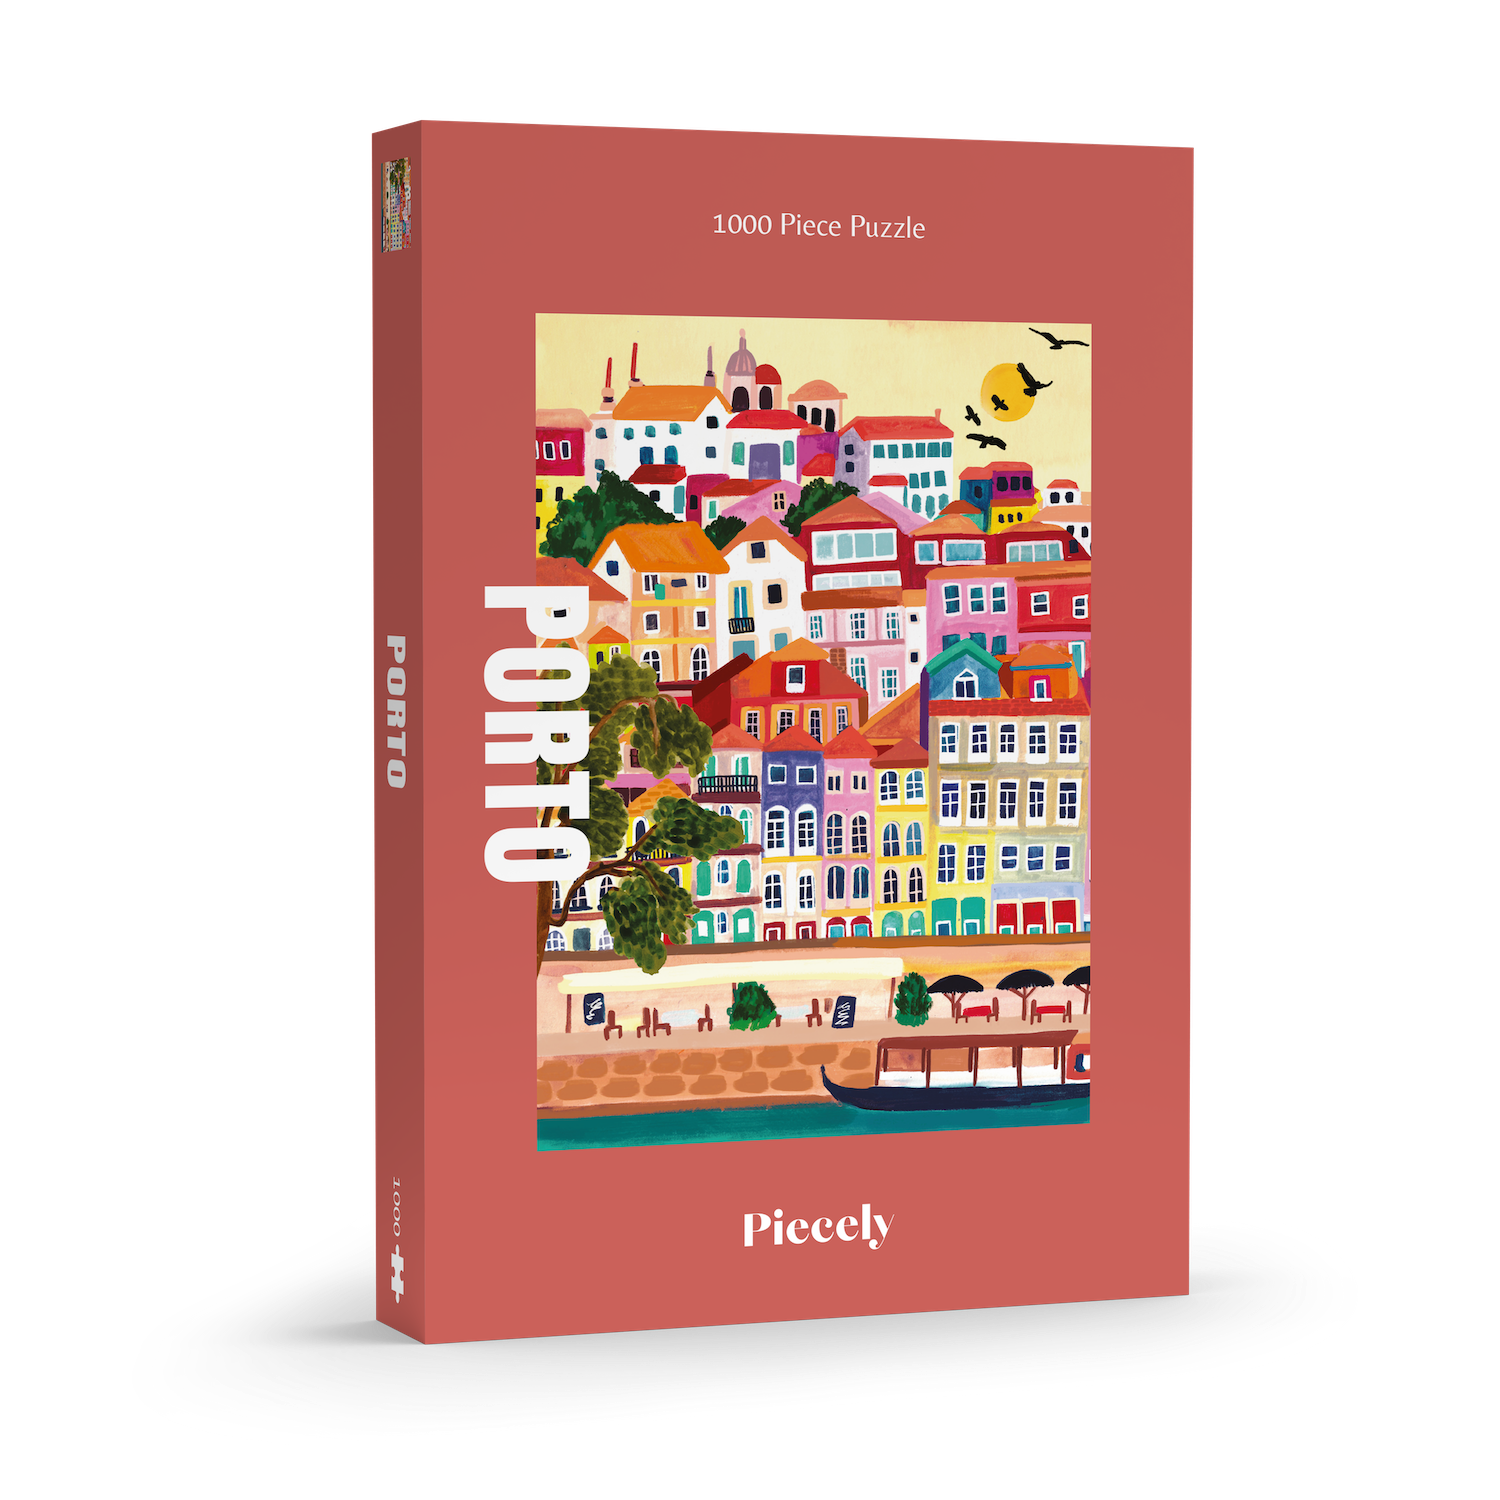 Außergewöhnliches Puzzle für Erwachsene mit 1000 Teilen, das die portugiesische Stadt Porto mit ihren bunten Häusern zeigt.